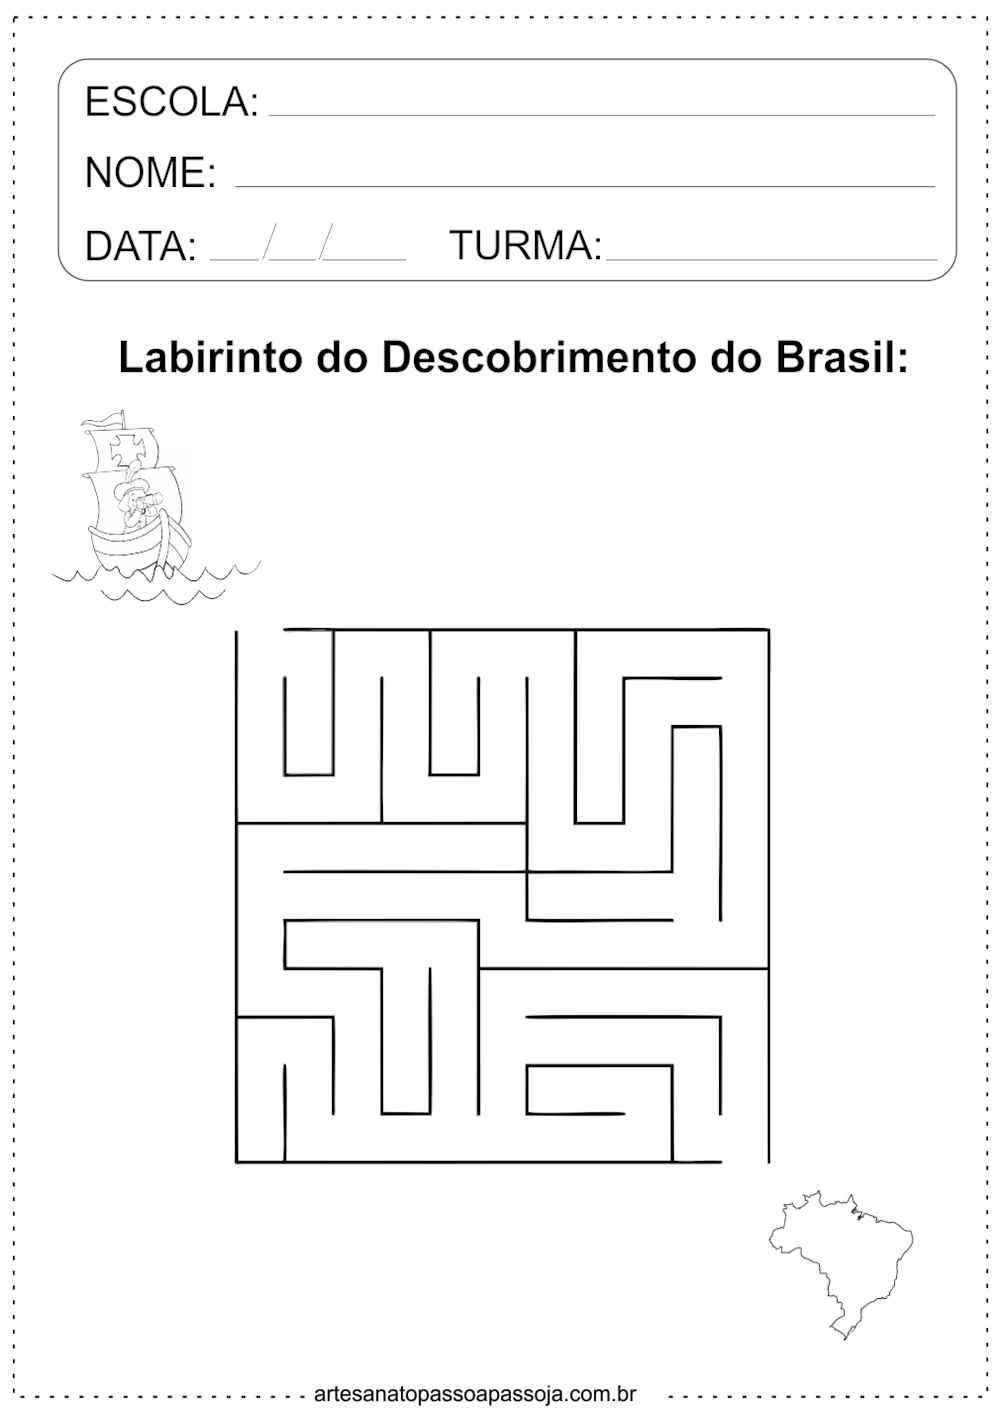 Labirinto do Descobrimento do Brasil